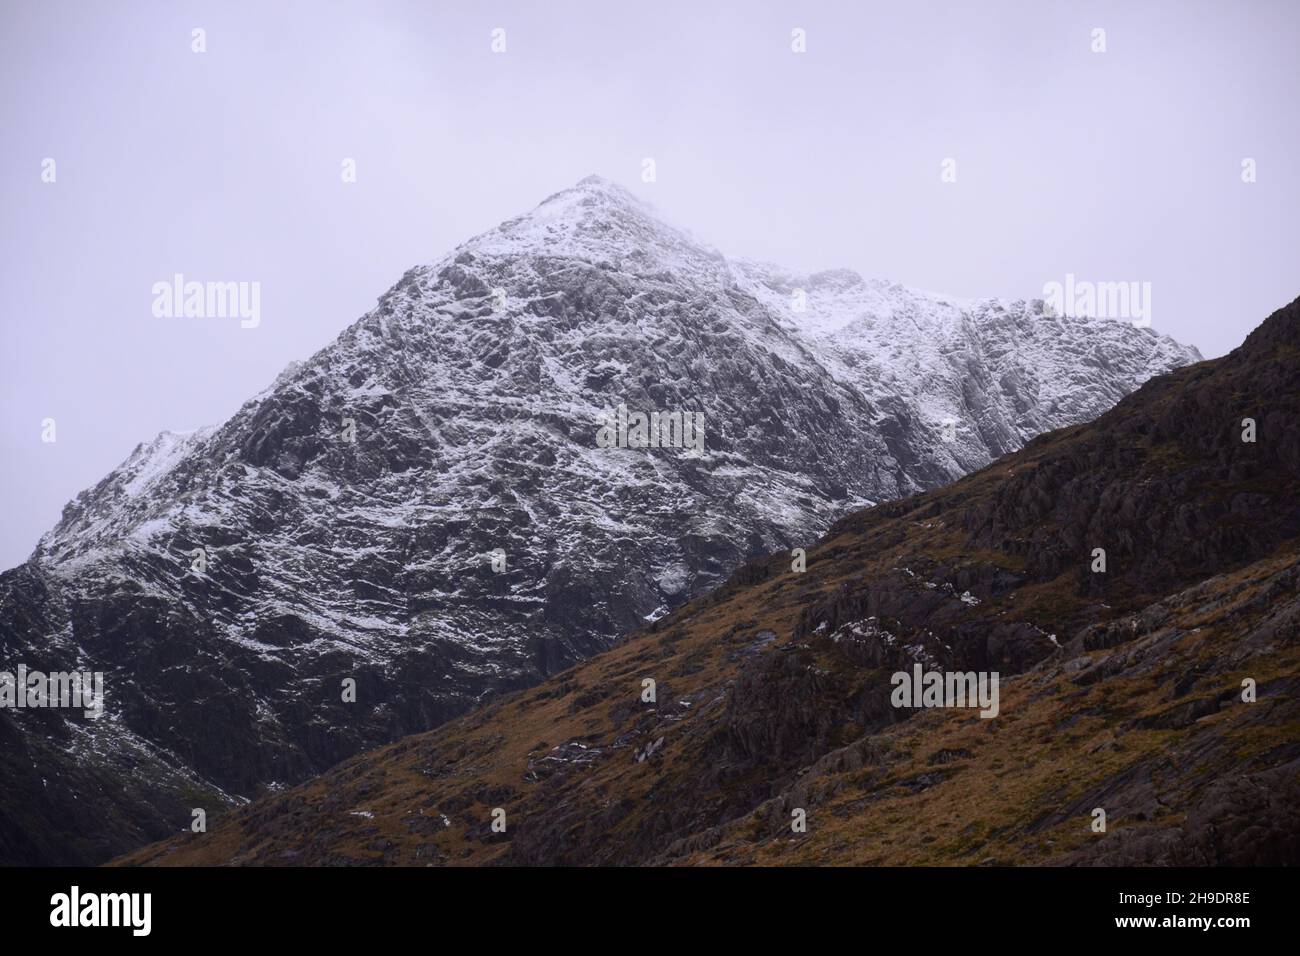 Snowdonia National Park (Eryri), Galles, Regno Unito. 6 dicembre 2021. Neve sulla cima della cima di Snowdon (Yr Wyddfa), la montagna più alta del Galles, vista dalla pista dei minatori, mentre la tempesta barra si avvicina. Il giorno seguente si prevede che il regno unito colpisca il vento e la neve. La montagna si trova a 1,085 metri (3,560 piedi) sopra il livello del mare, e il punto più alto nelle Isole britanniche fuori dalle Highlands scozzesi. Credit: Terry Waller/Alamy Live News Foto Stock